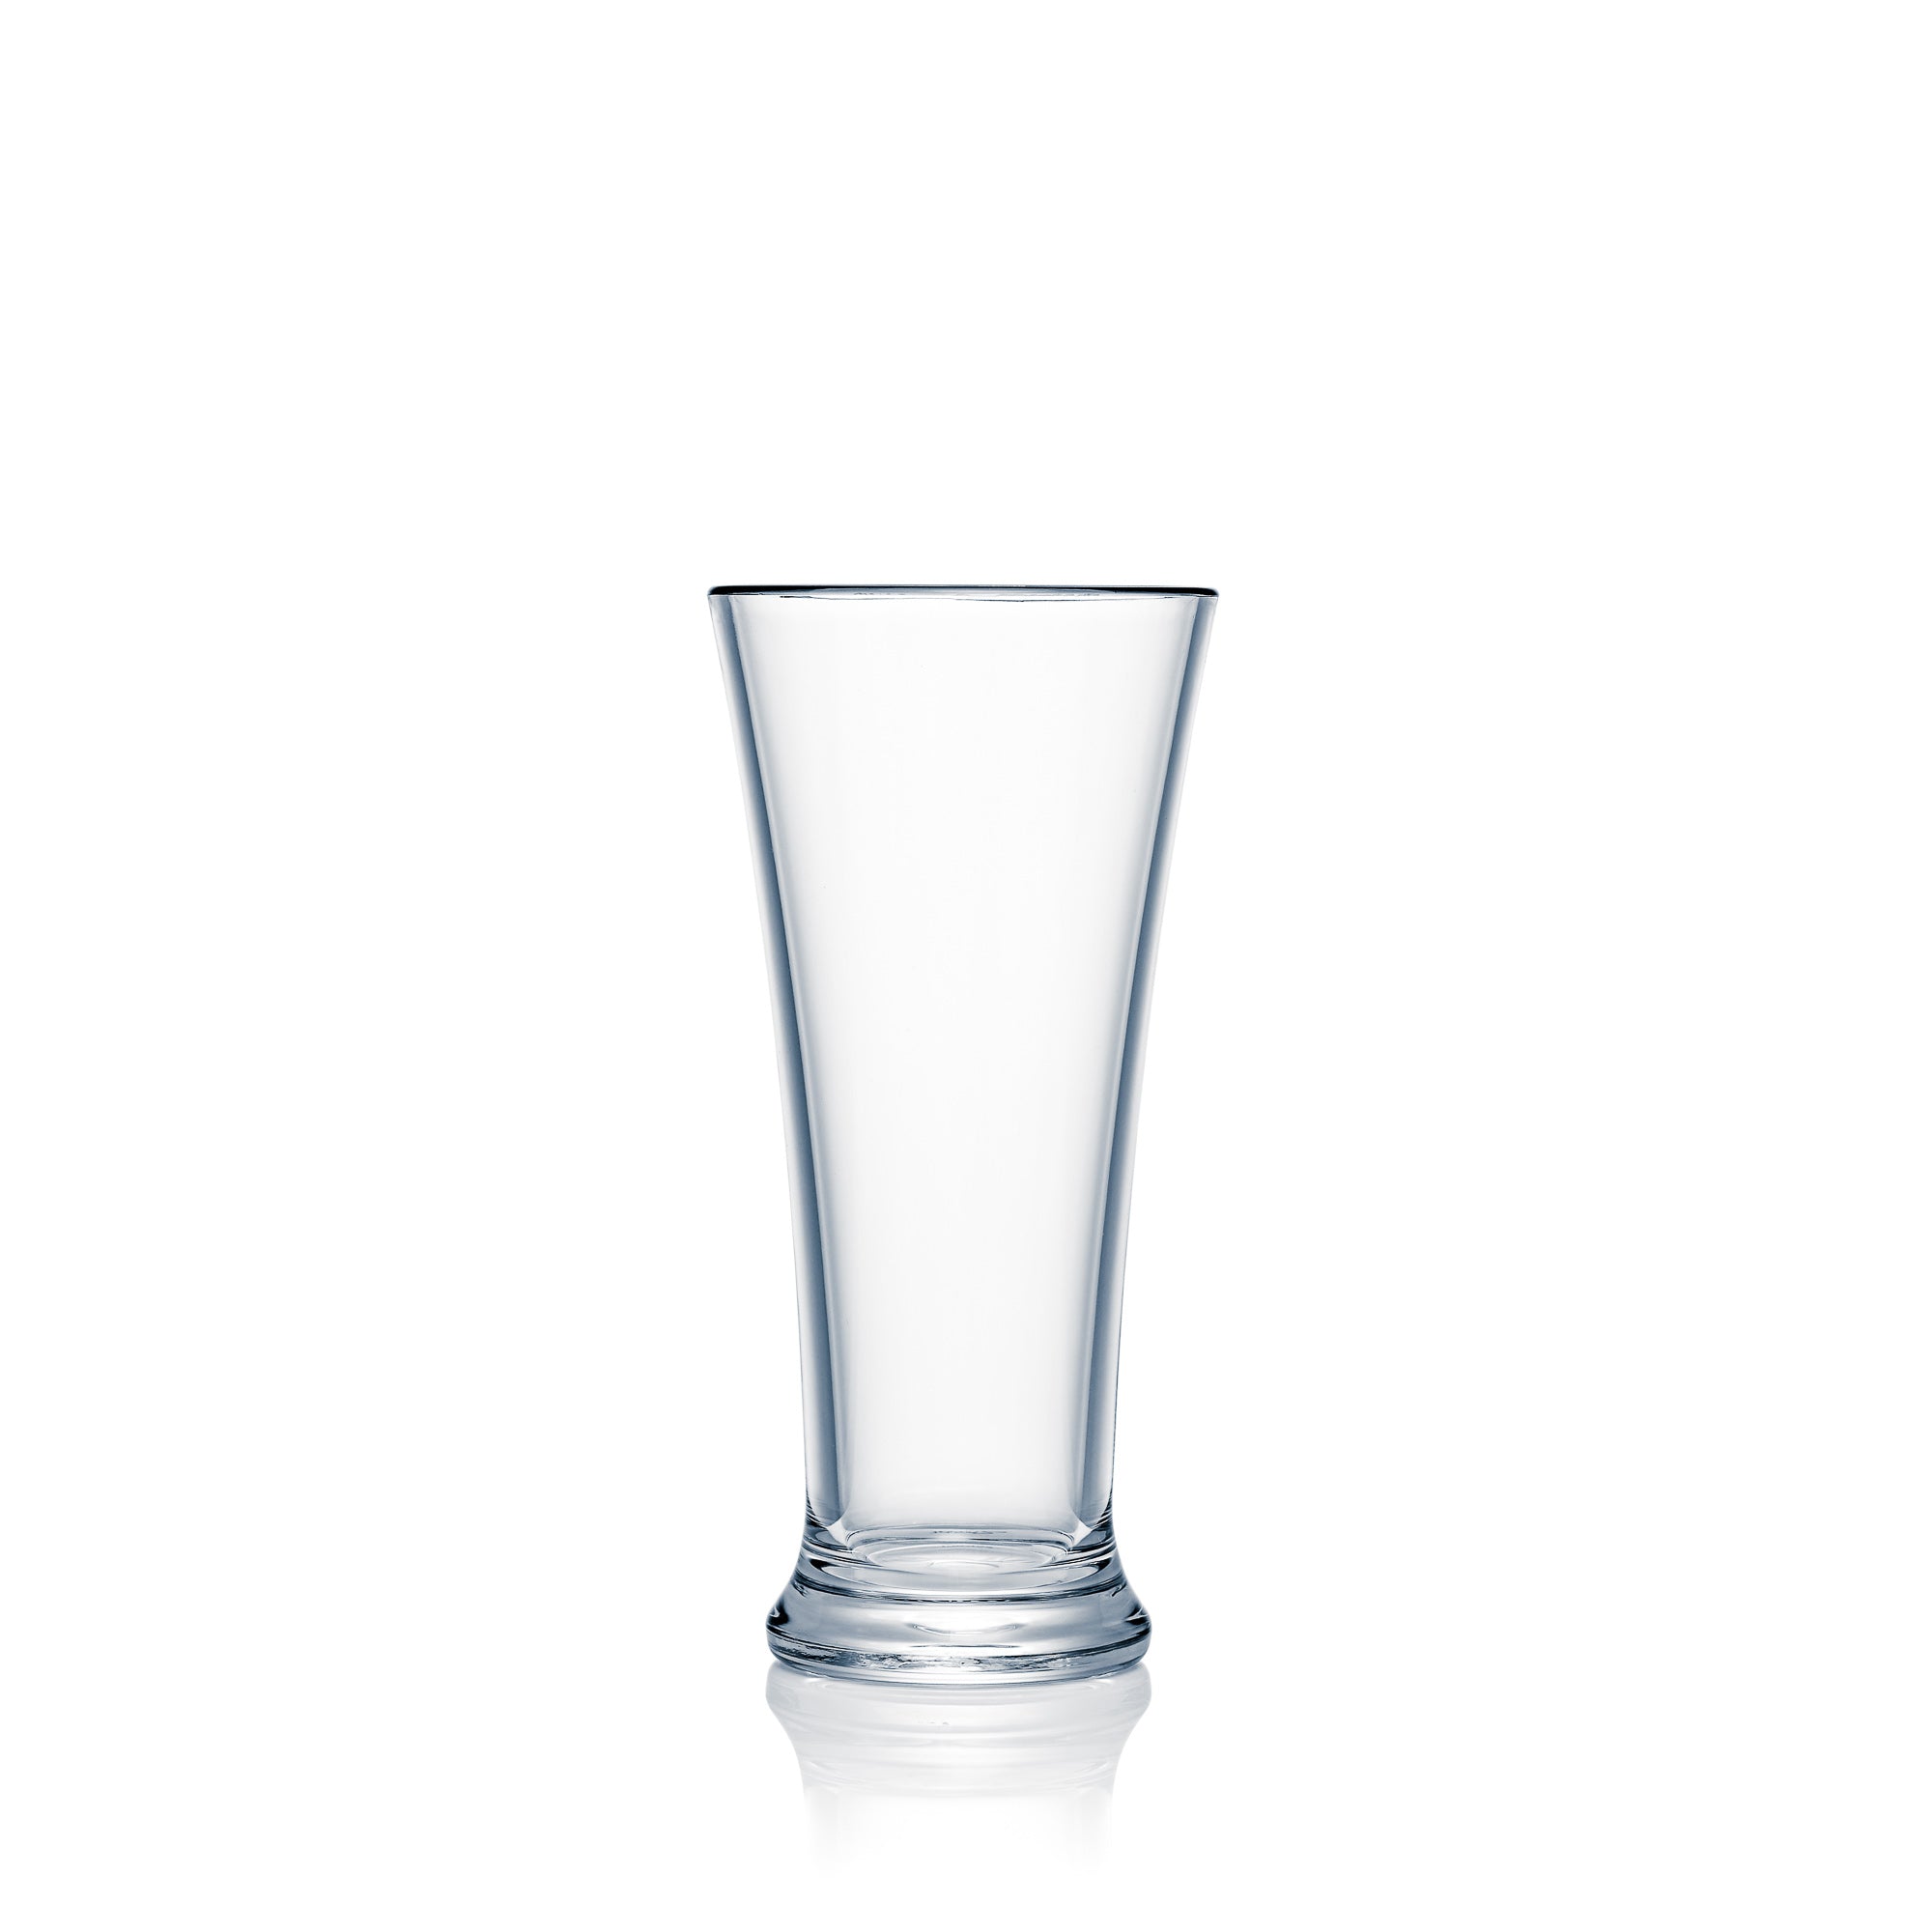 Strahl Design+Contemporary Pilsner glas (285ml) - N41500 Strahl